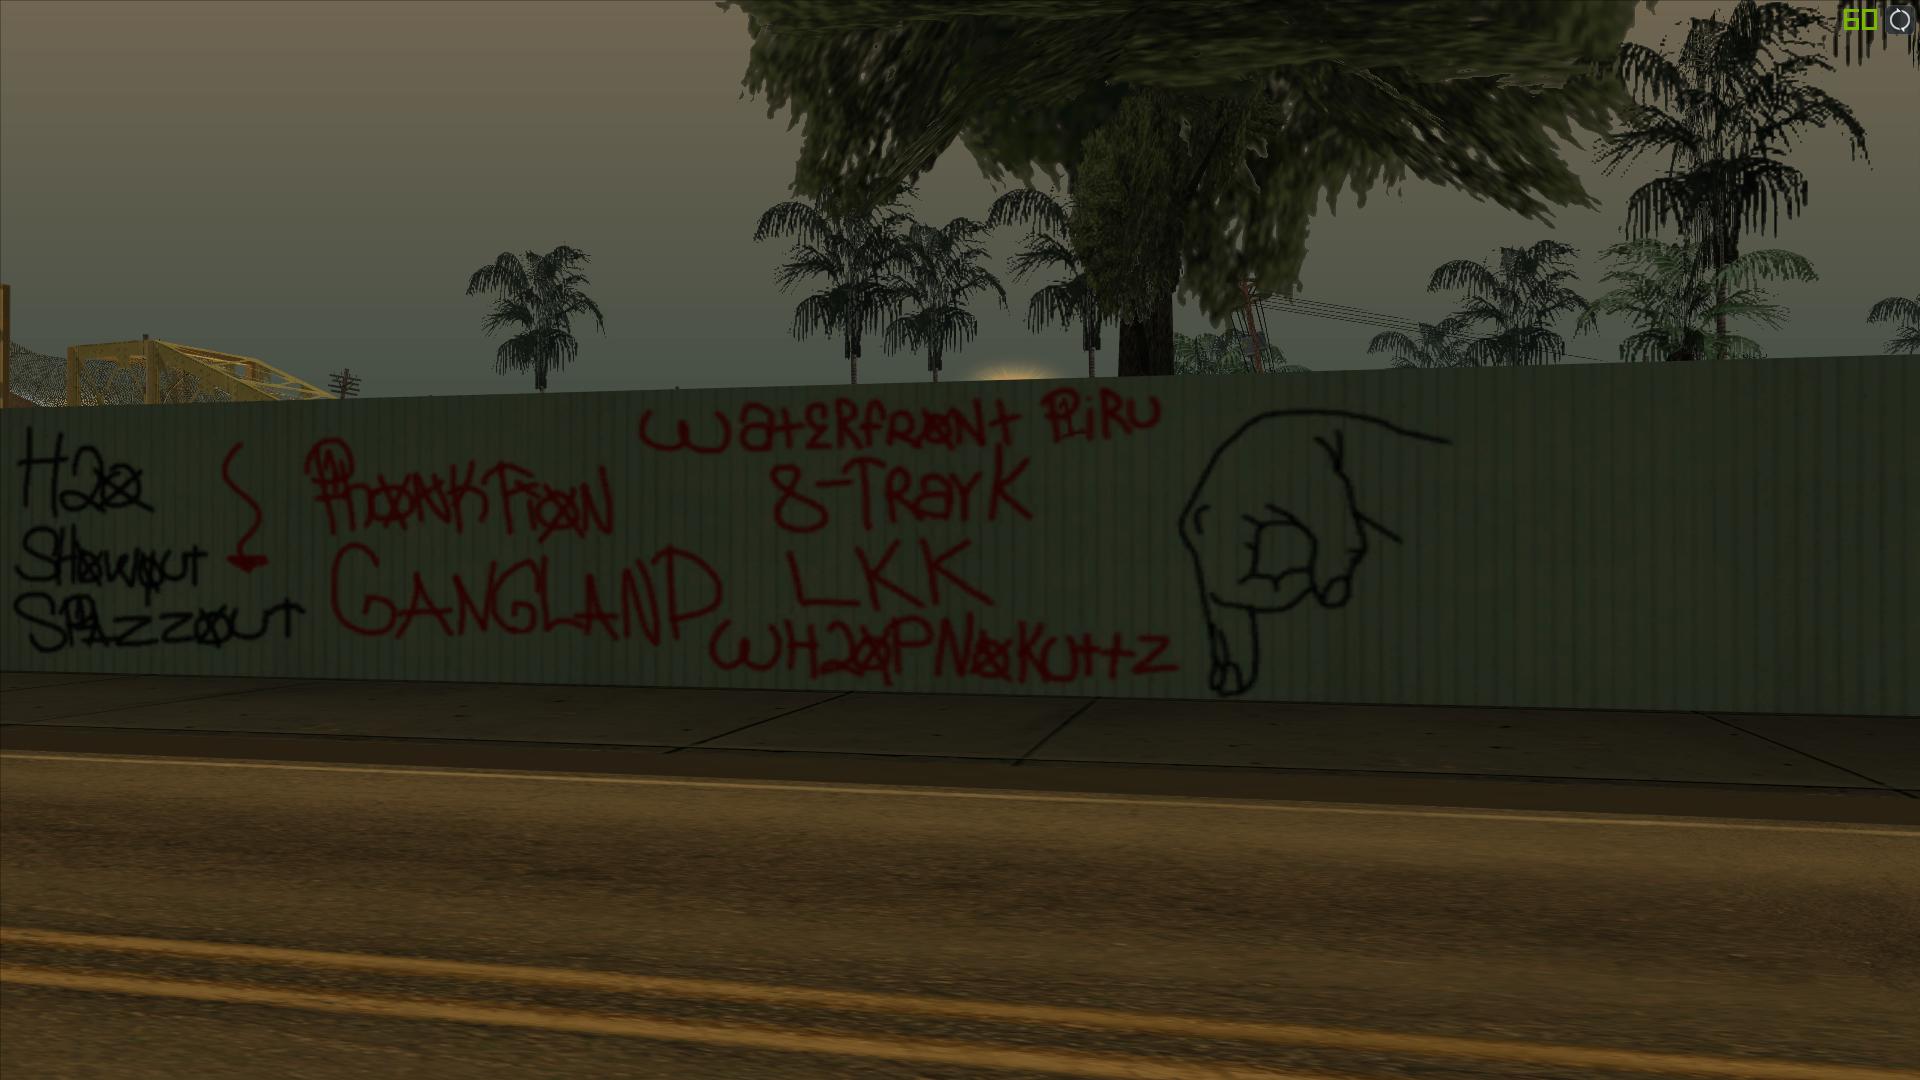 [REL] Piru's Gang WFP_EMOD GraffitiPack. Oobh